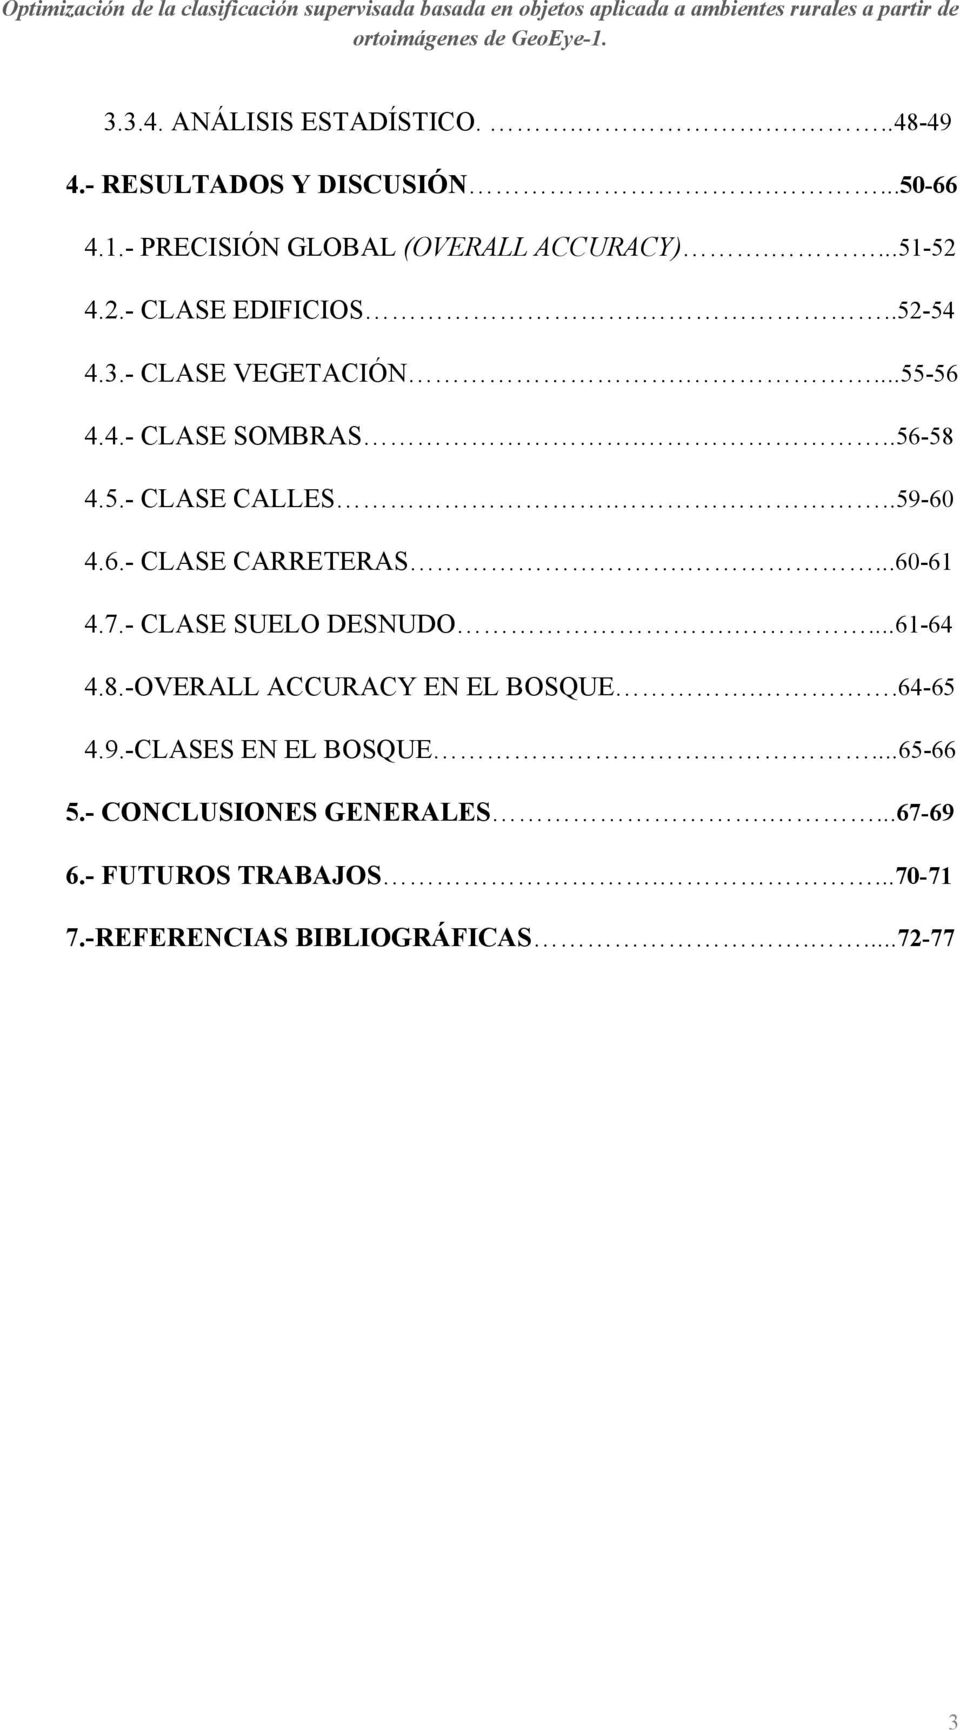 ..59-60 4.6.- CLASE CARRETERAS....60-61 4.7.- CLASE SUELO DESNUDO....61-64 4.8.-OVERALL ACCURACY EN EL BOSQUE..64-65 4.9.-CLASES EN EL BOSQUE.